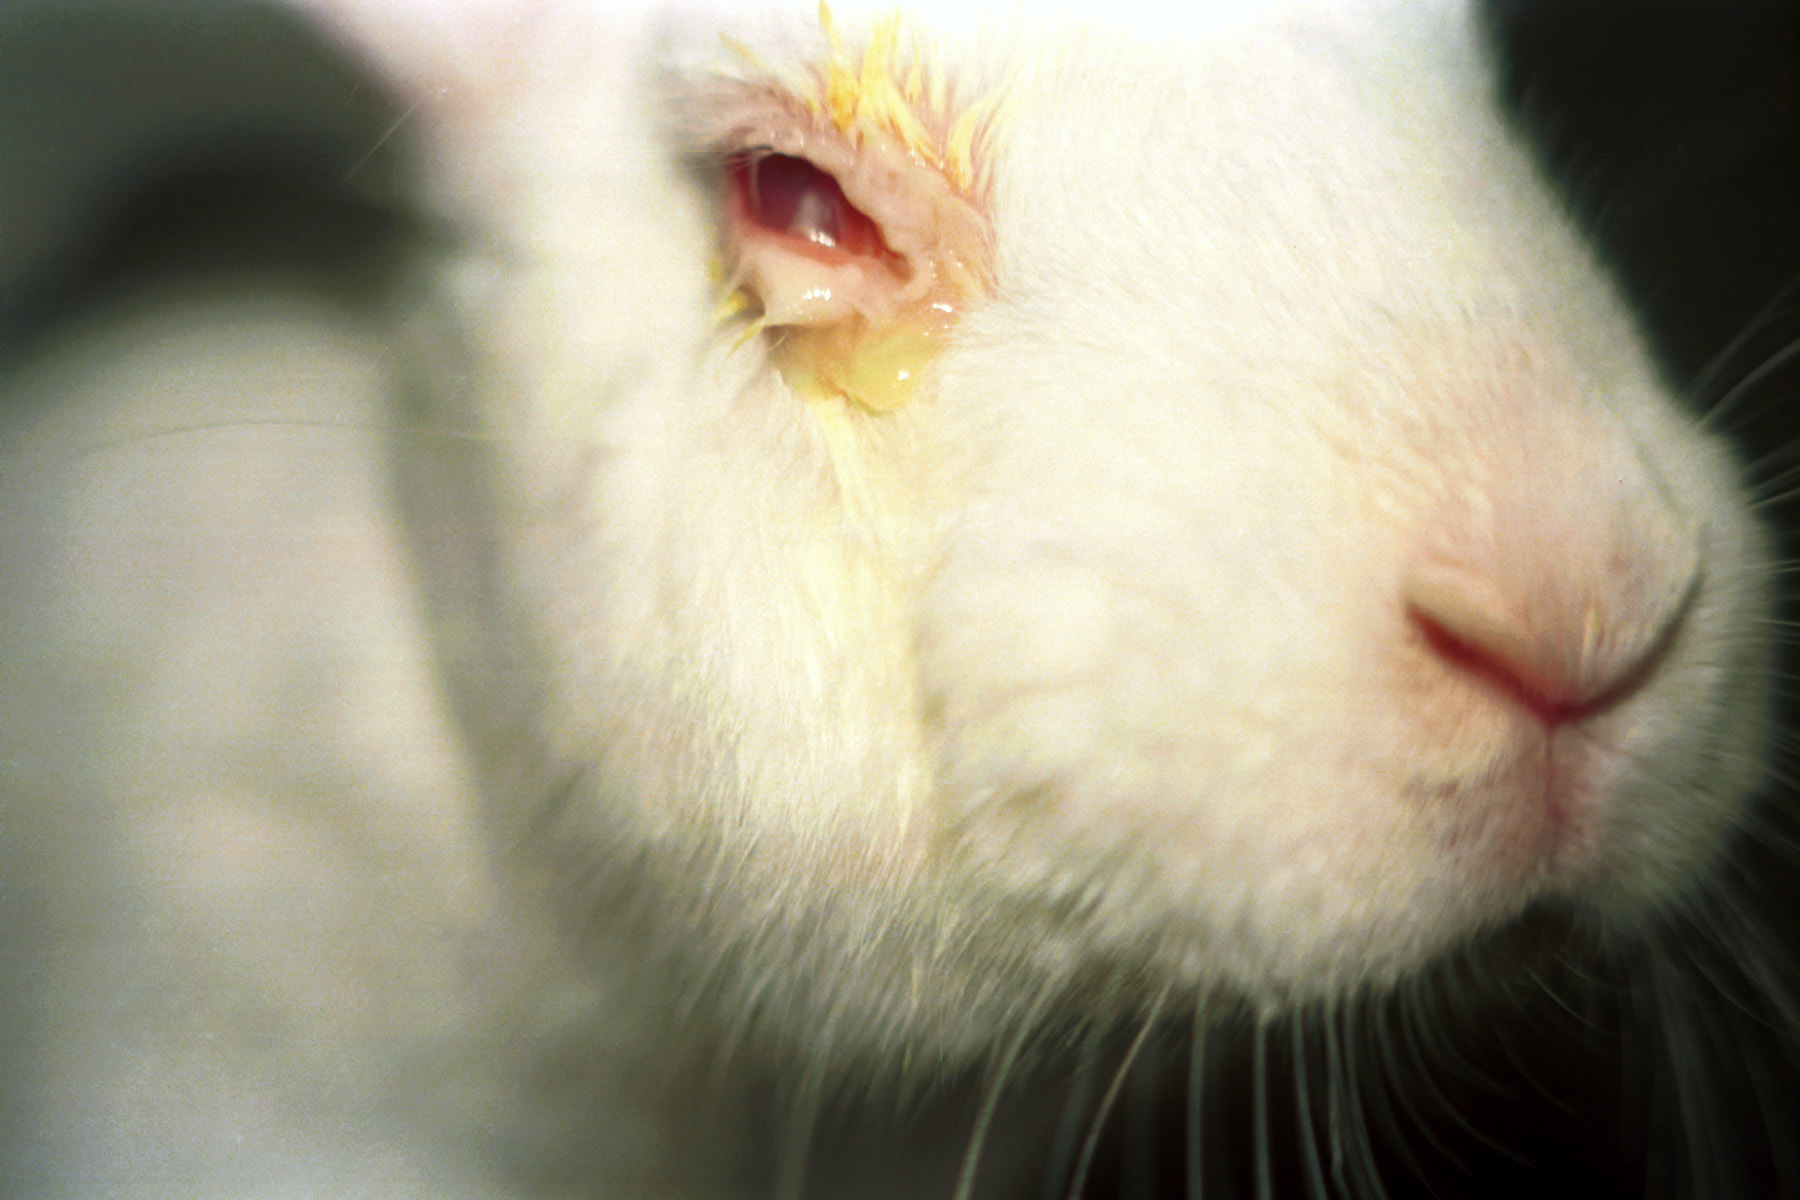 Conejo siendo sometido a test de Draize ©Peta. Foto extraída de Pixabay